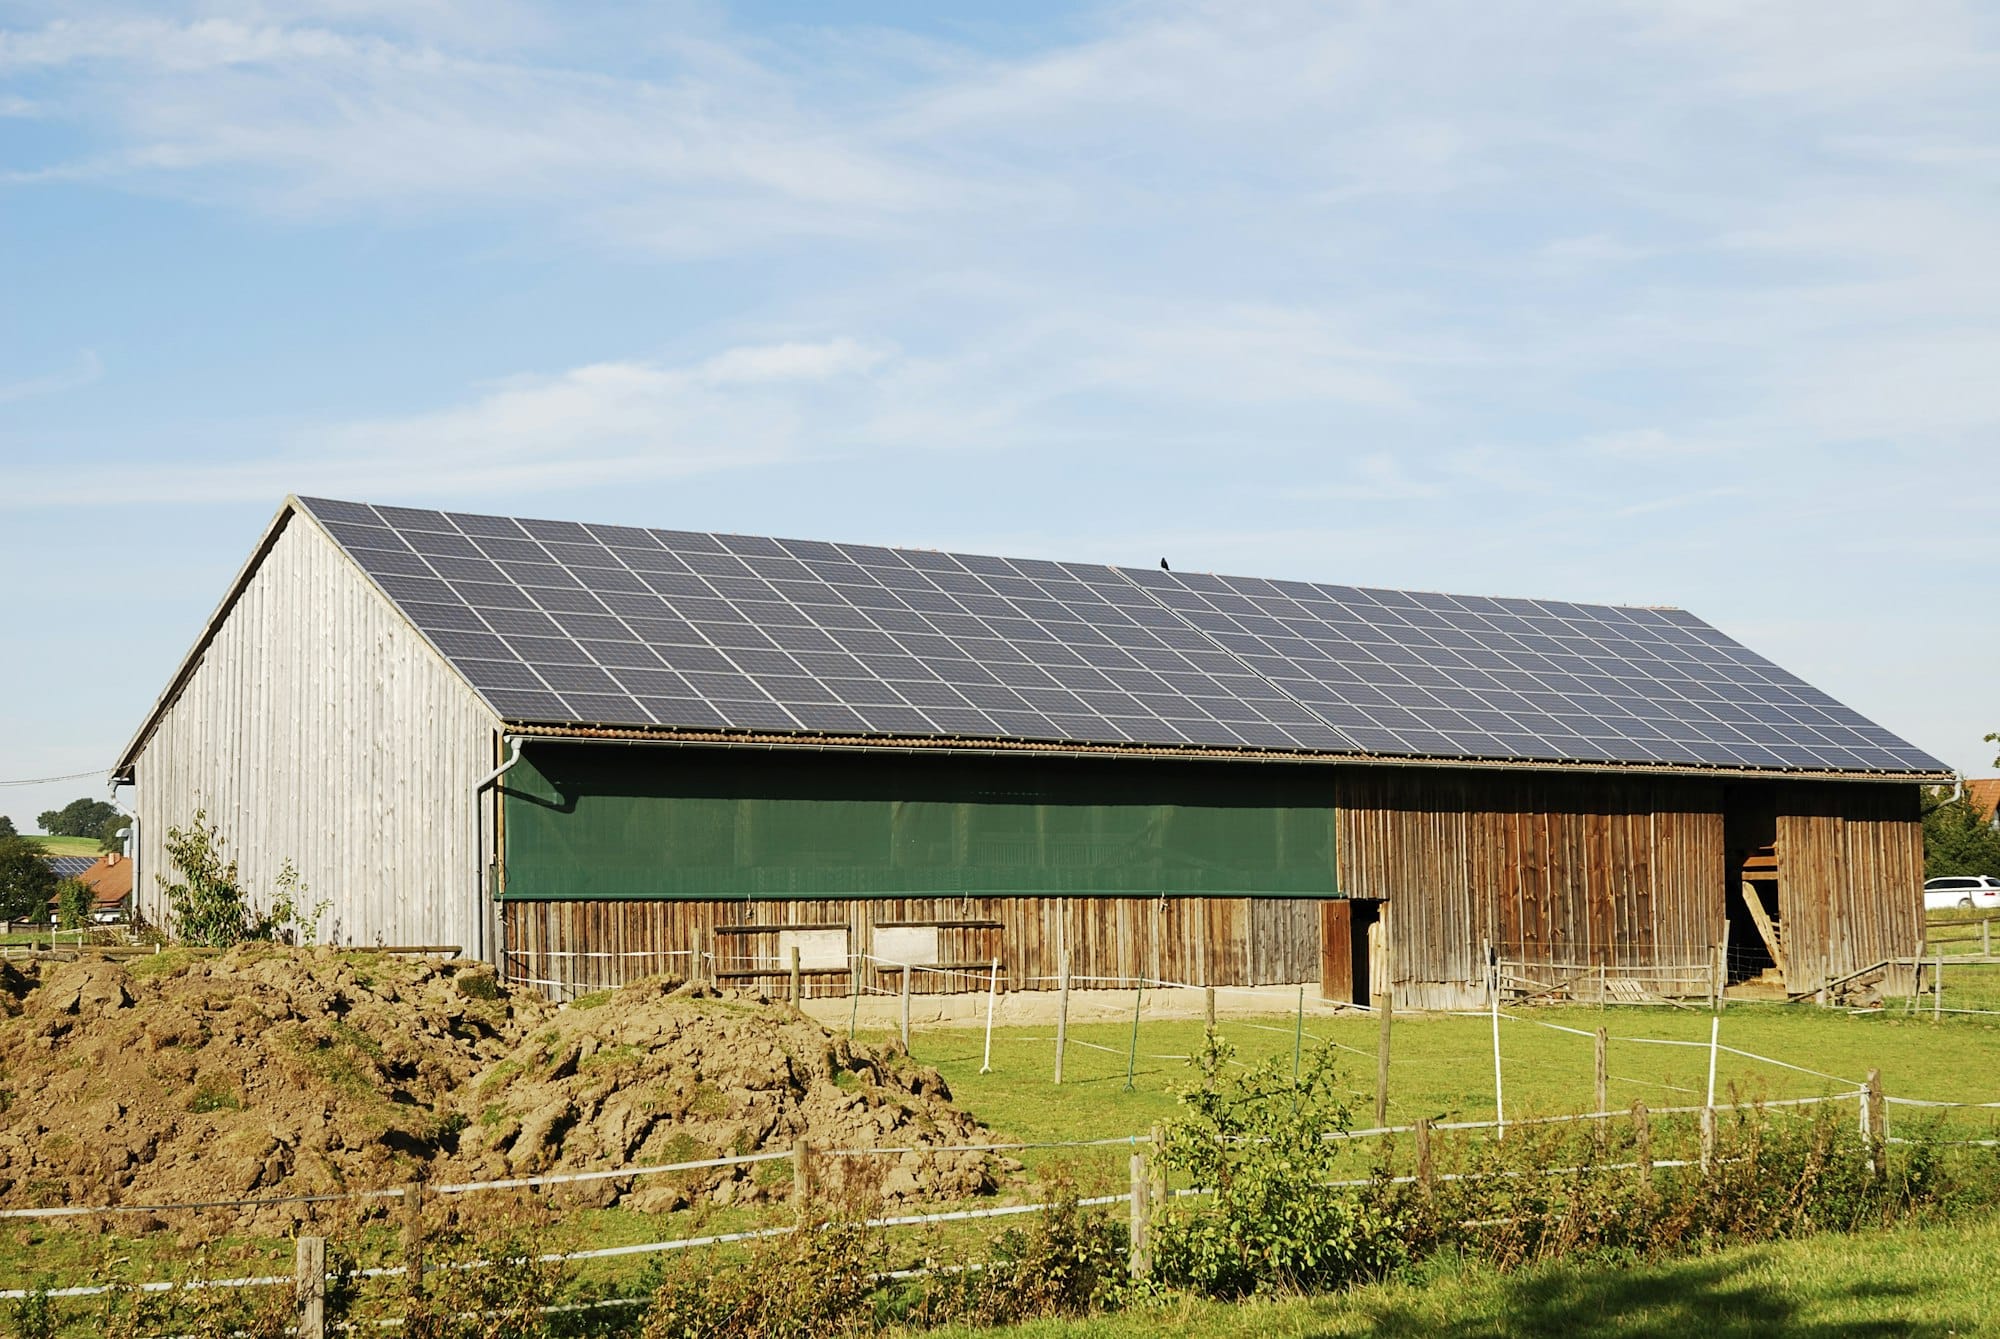 Rentabilité et durabilité : Les avantages des hangars agricoles photovoltaïques